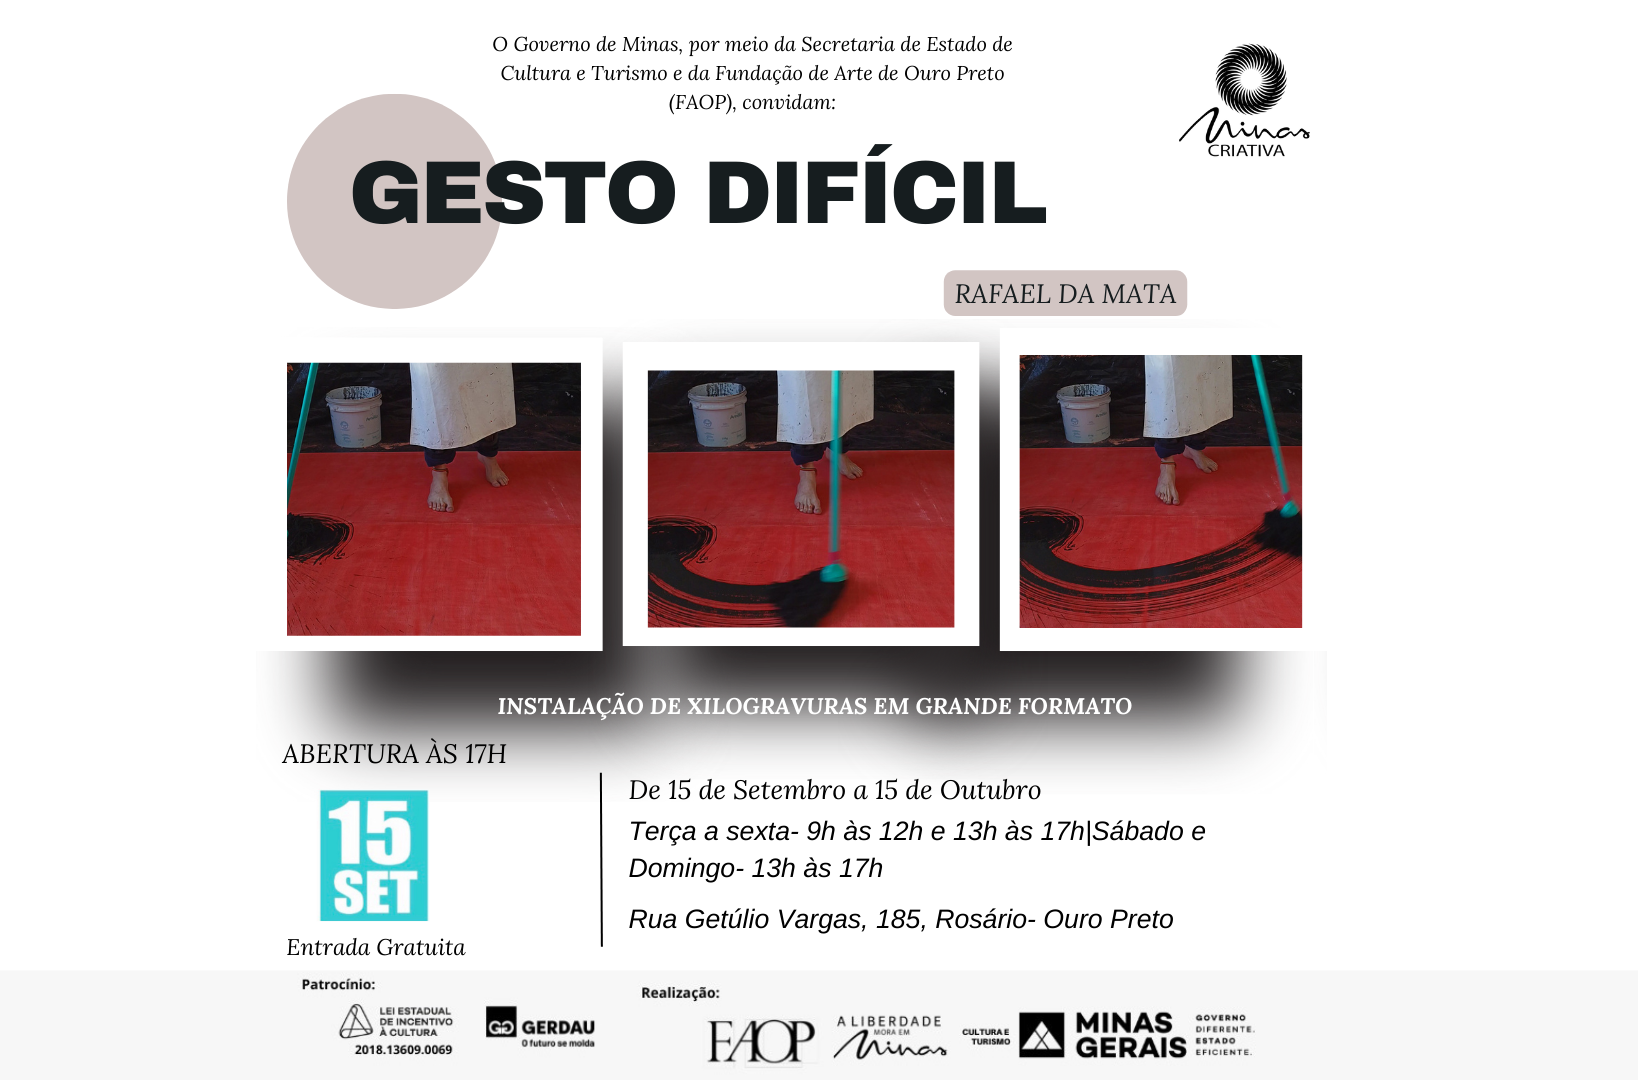 Galeria de Arte da Faop abre instalação de xilogravuras nesta sexta-feira (15), em Ouro Preto 